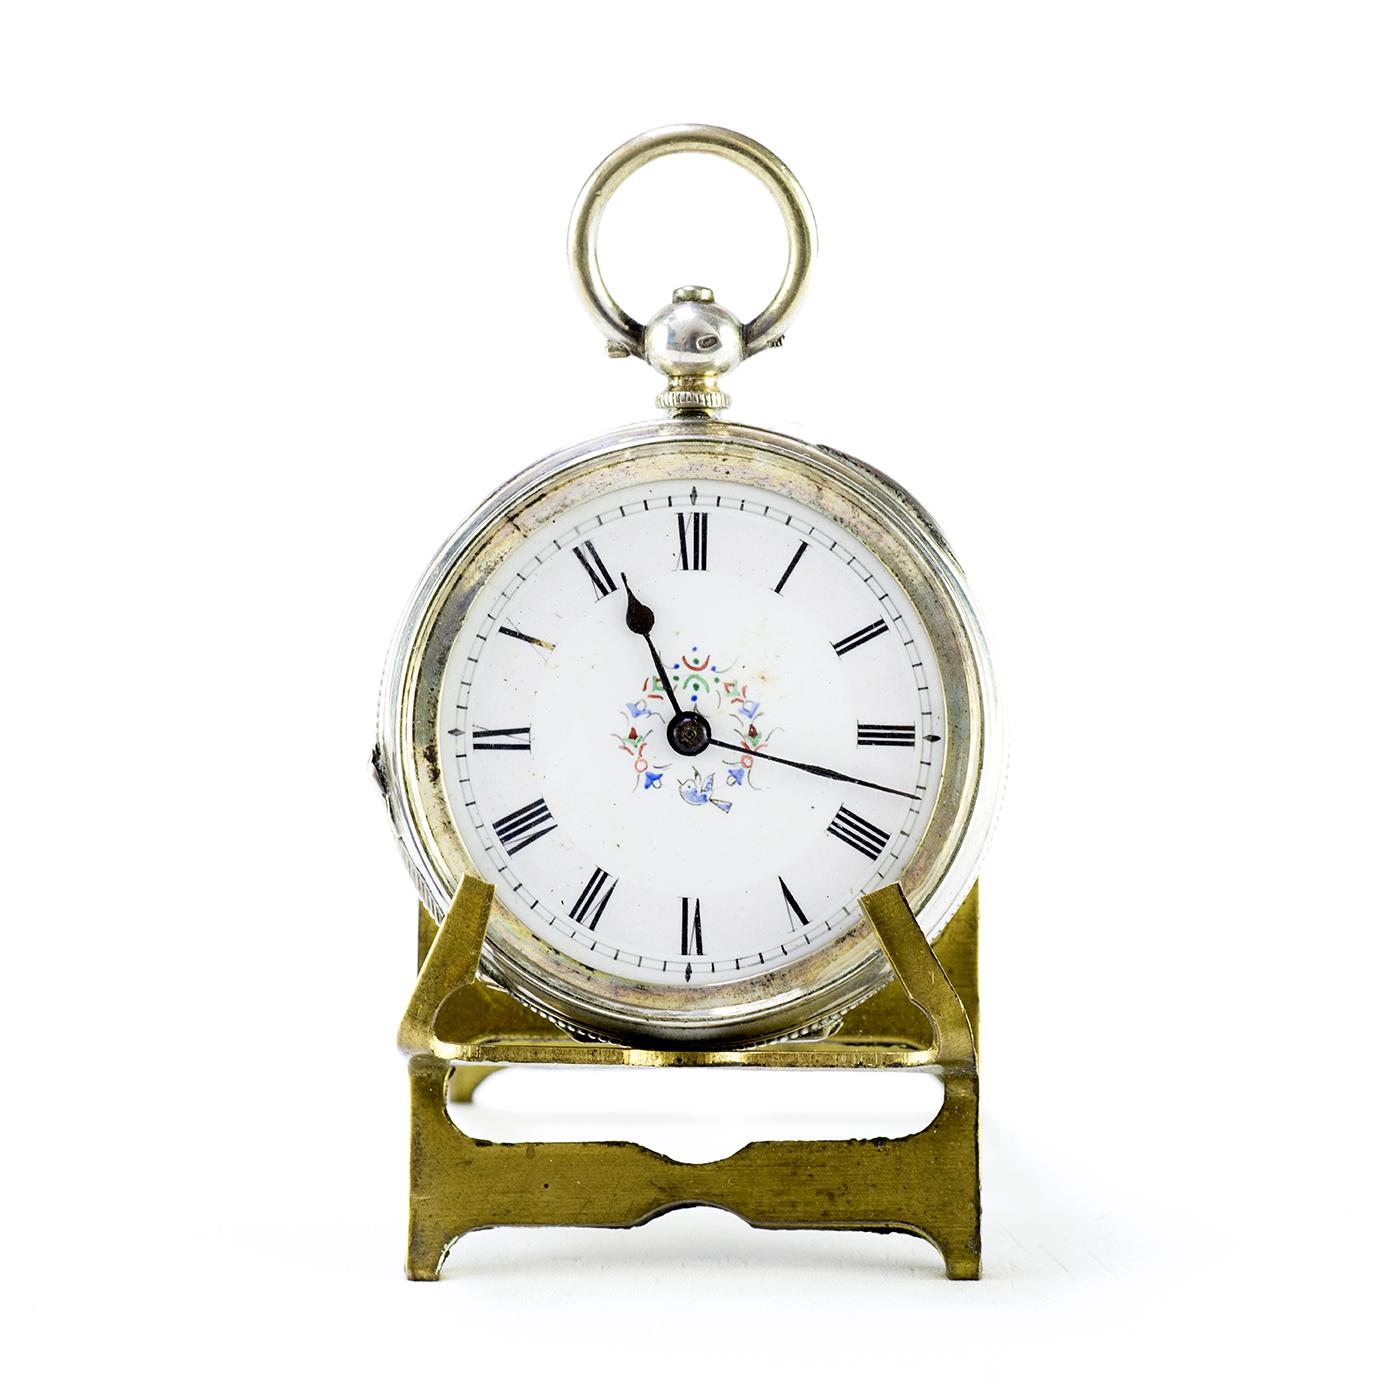 P.C. Reloj Suizo de Bolsillo, Lepine. Ca. 1890